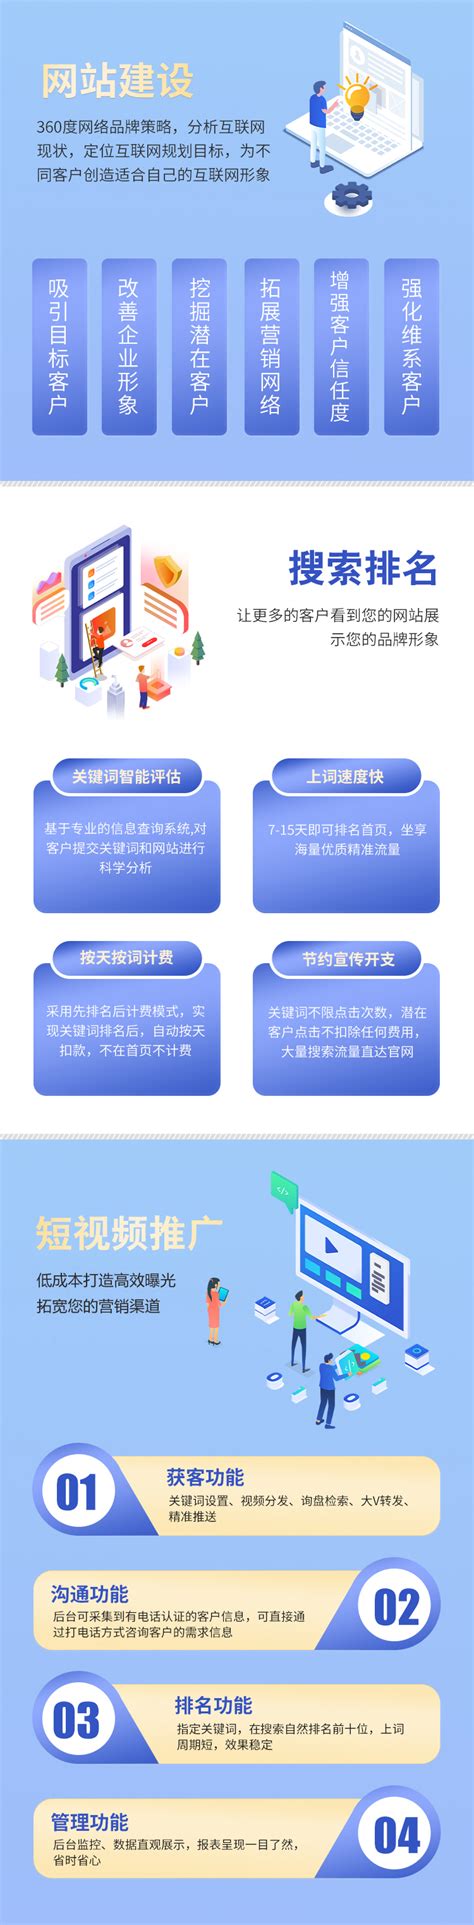 广东网站建设公司网络服务